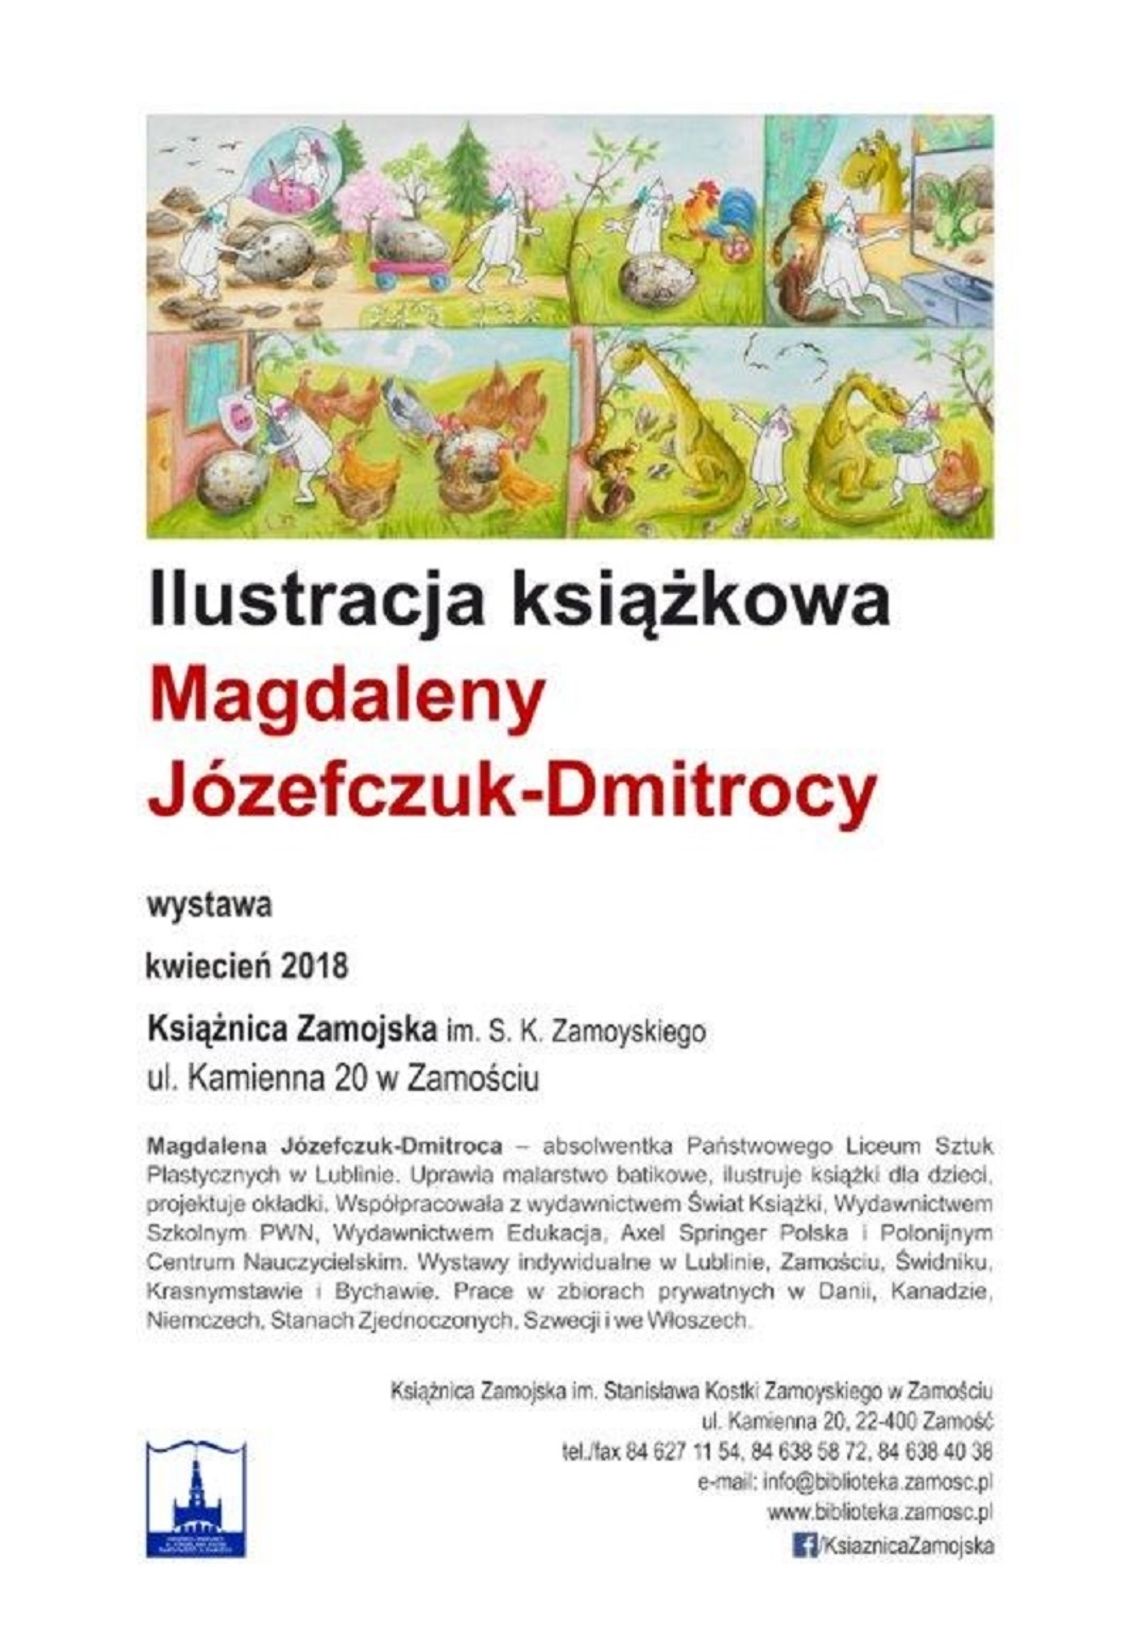 Ilustracja książkowa Magdaleny Józefczuk-Dmitrocy w Książnicy Zamojskiej 